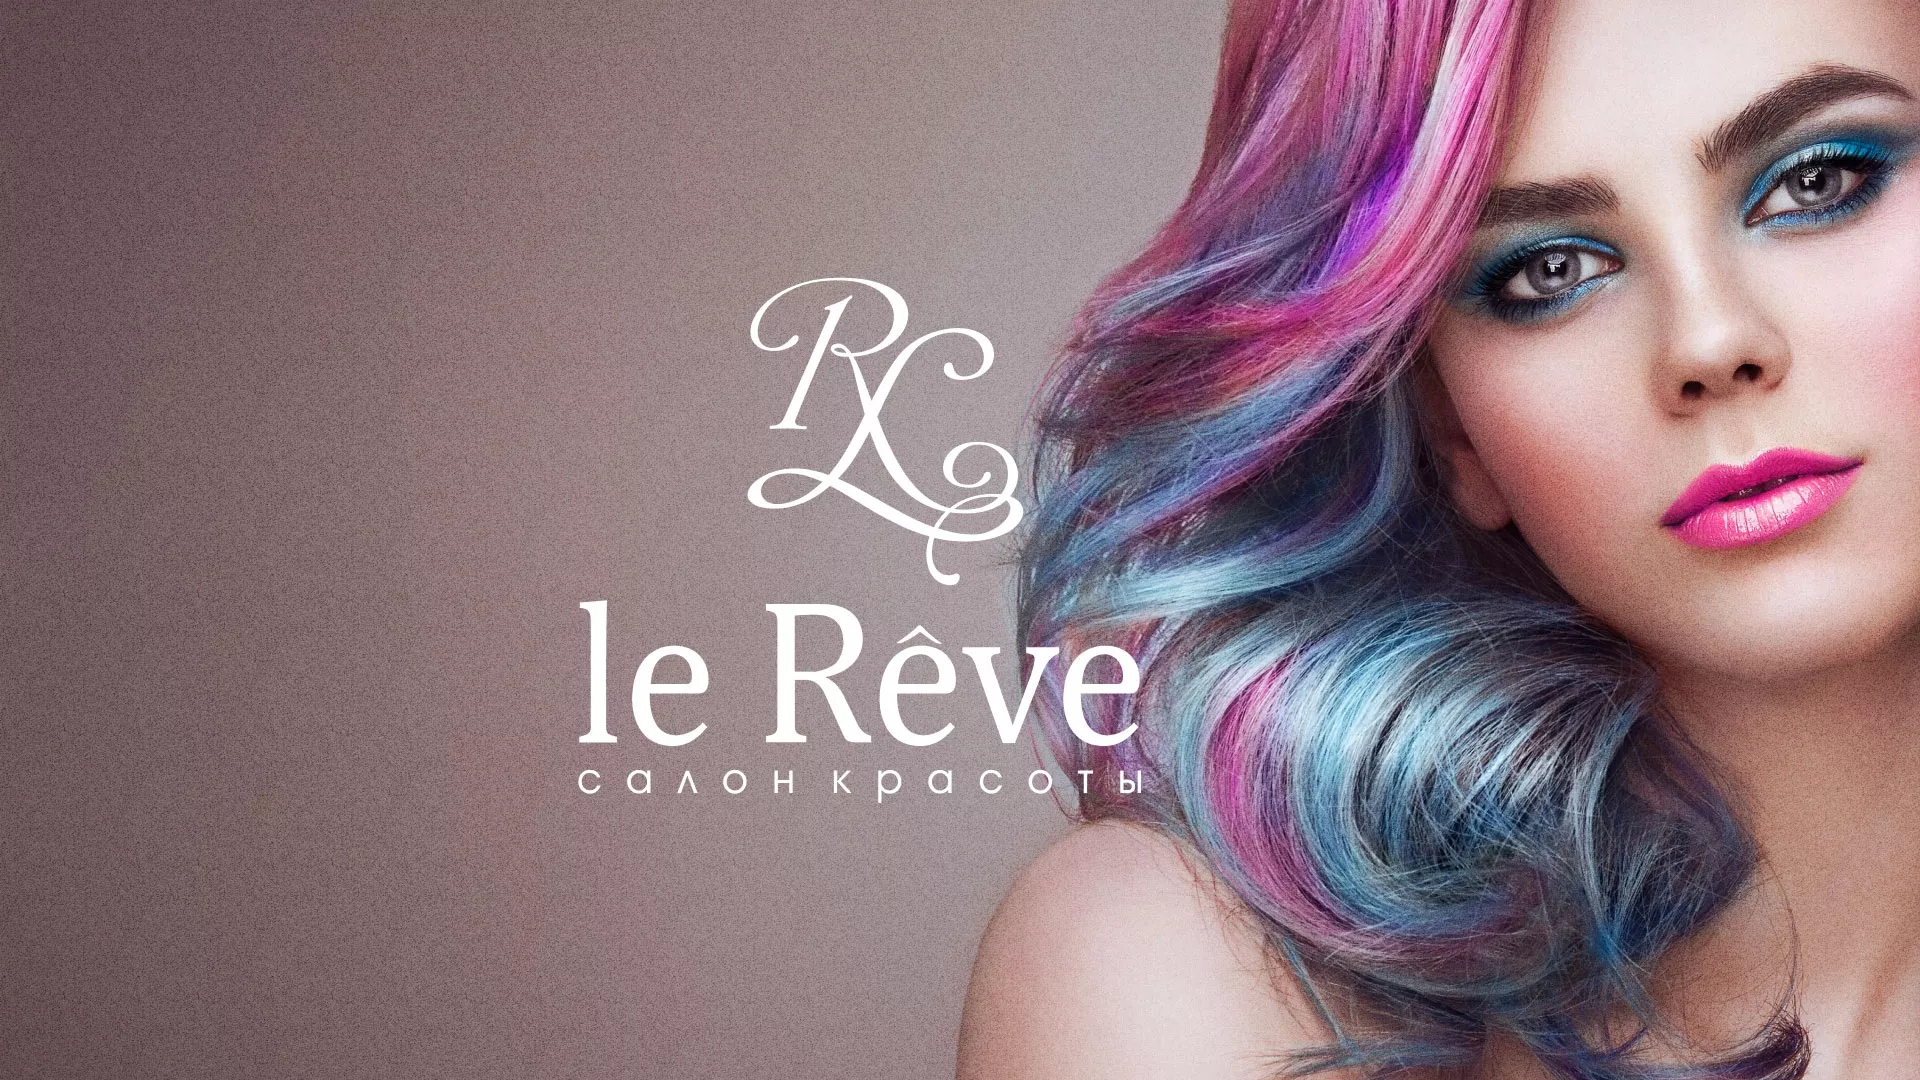 Создание сайта для салона красоты «Le Reve» в Рузаевке